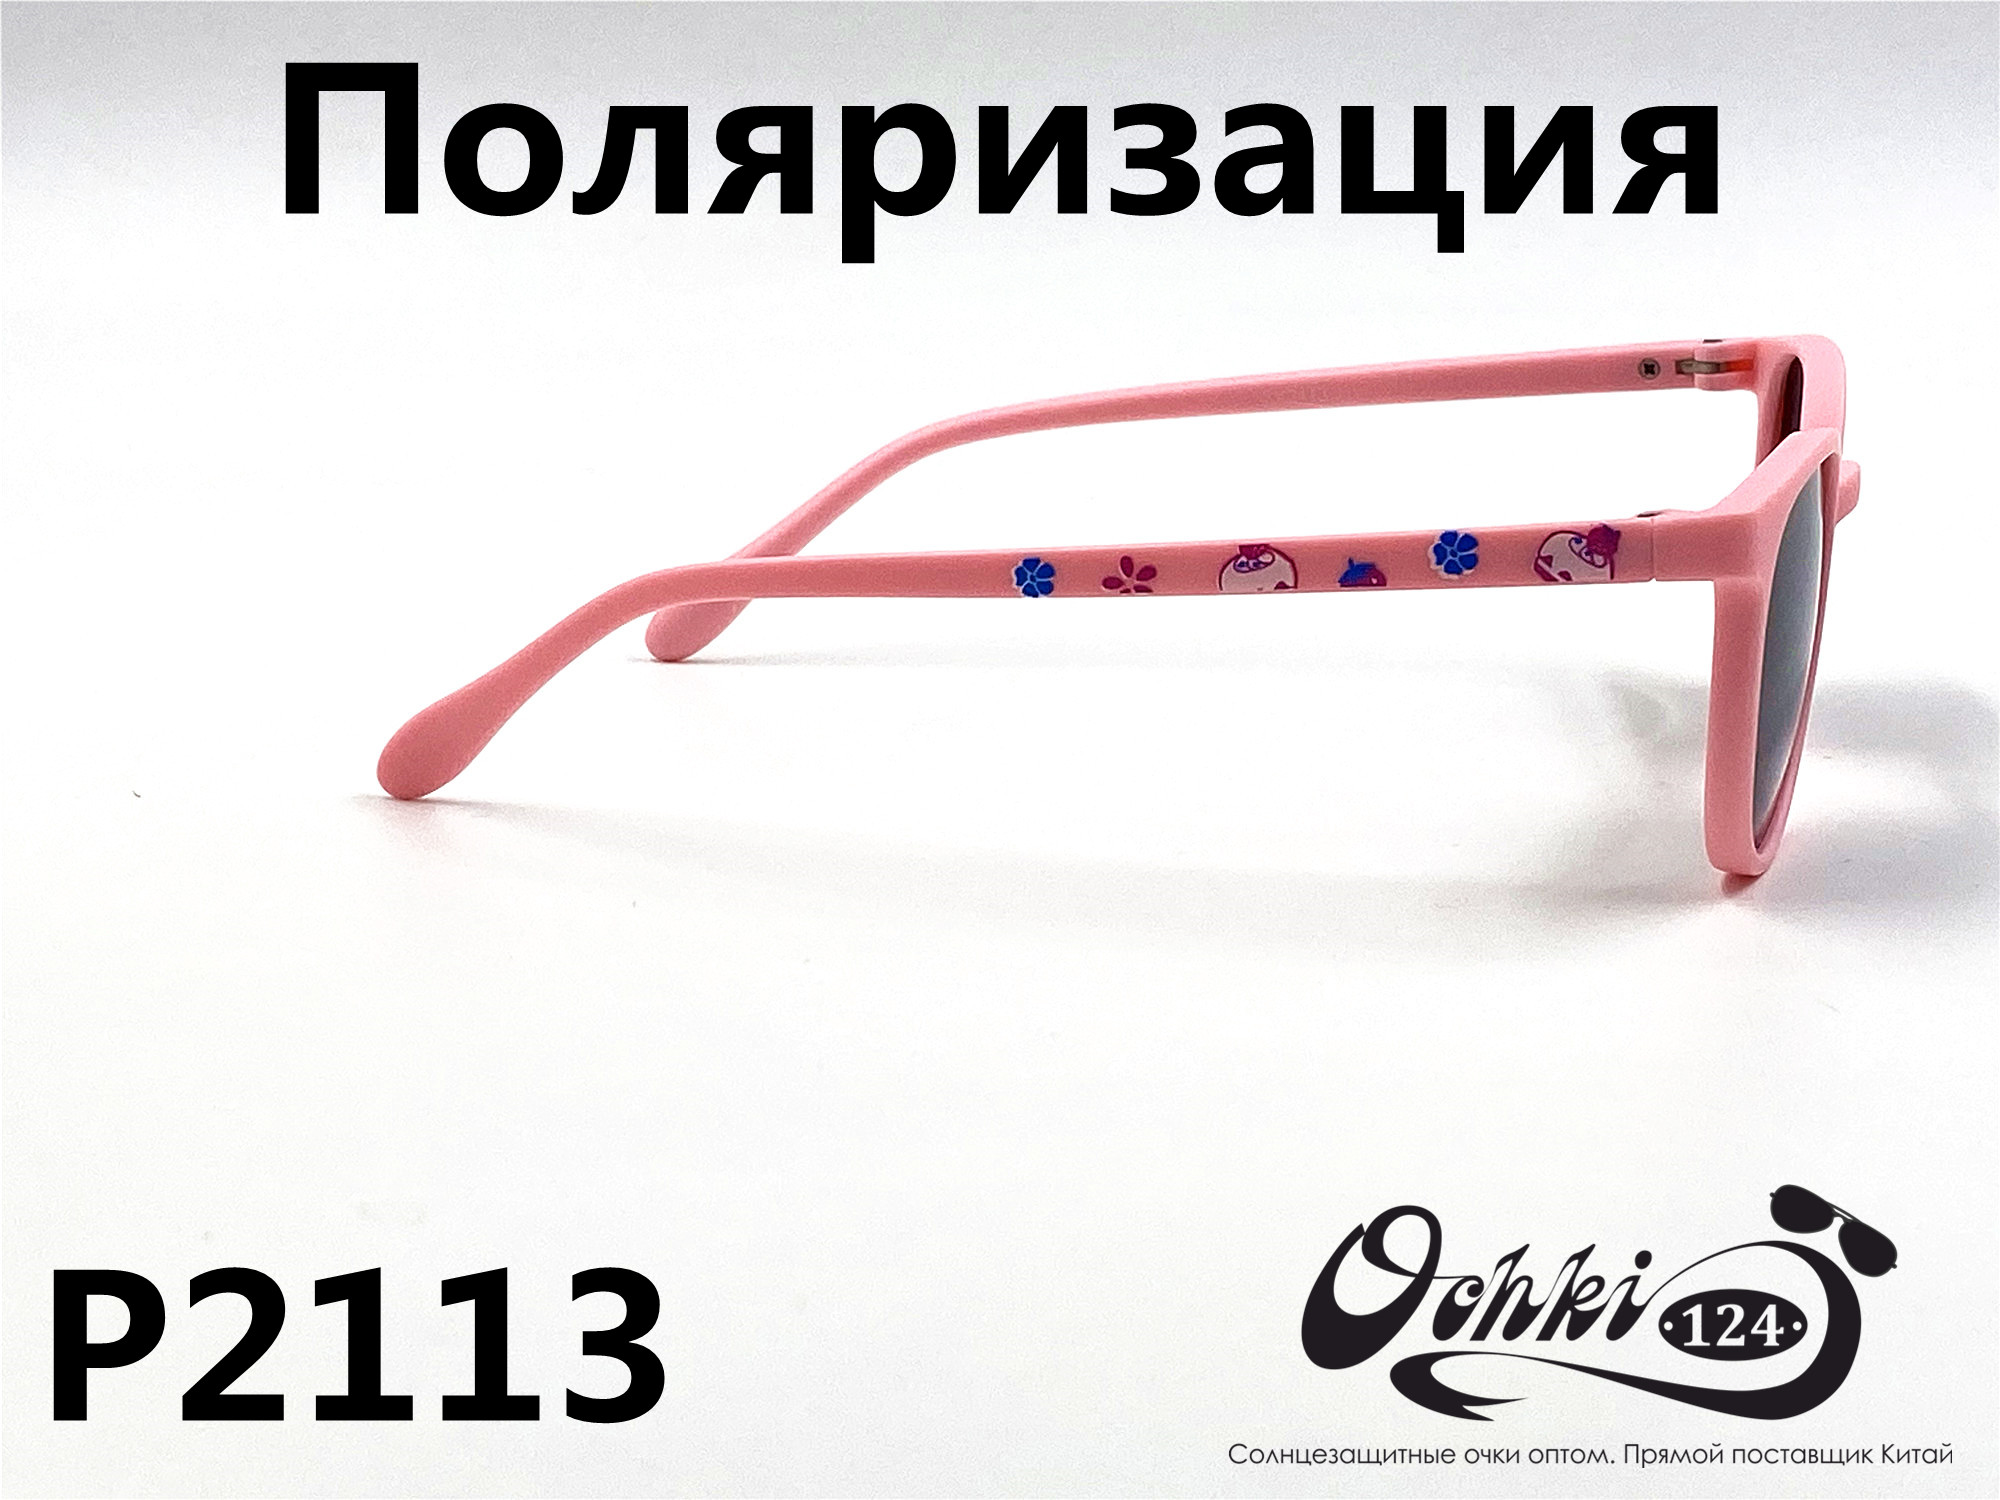  Солнцезащитные очки картинка 2022 Детские Поляризованные Круглые P2113-9 